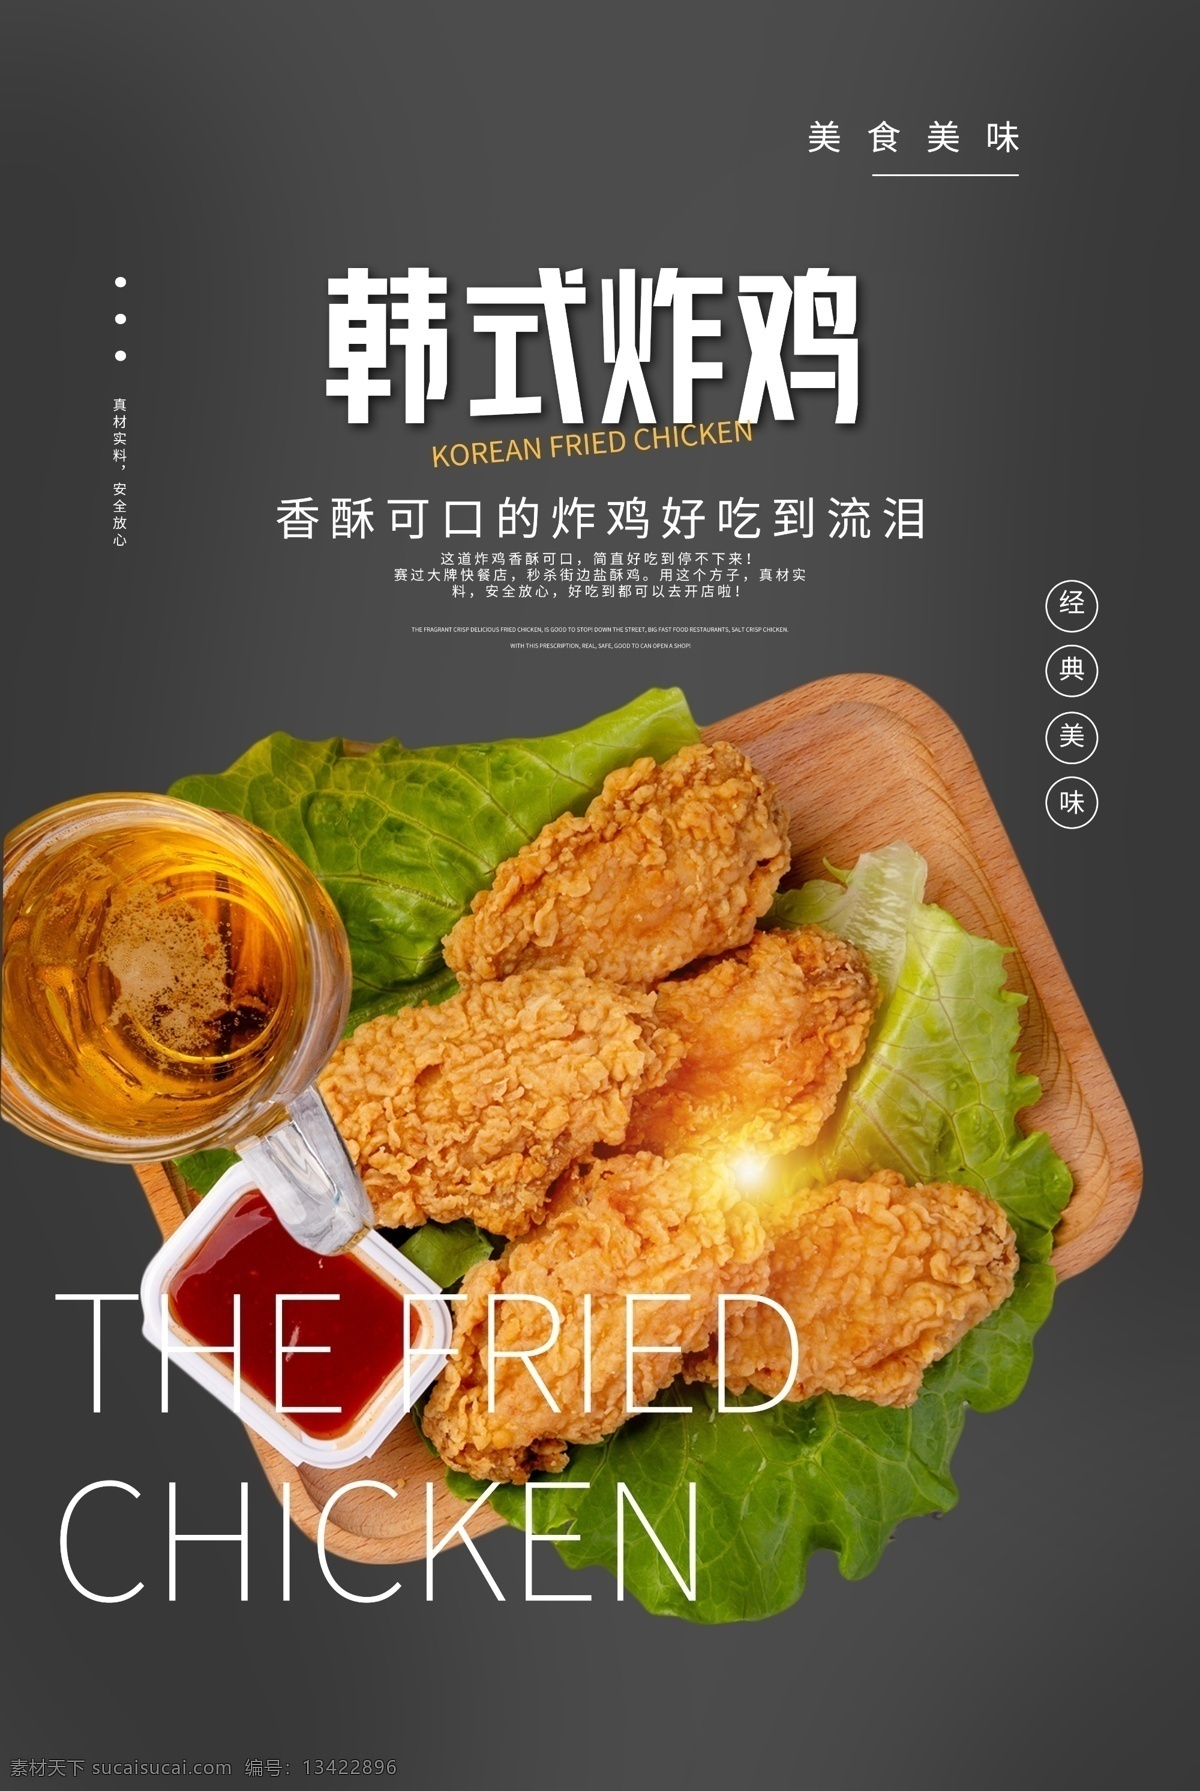 韩式 炸鸡 美食 宣传 活动 海报 韩式炸鸡 餐饮美食 类